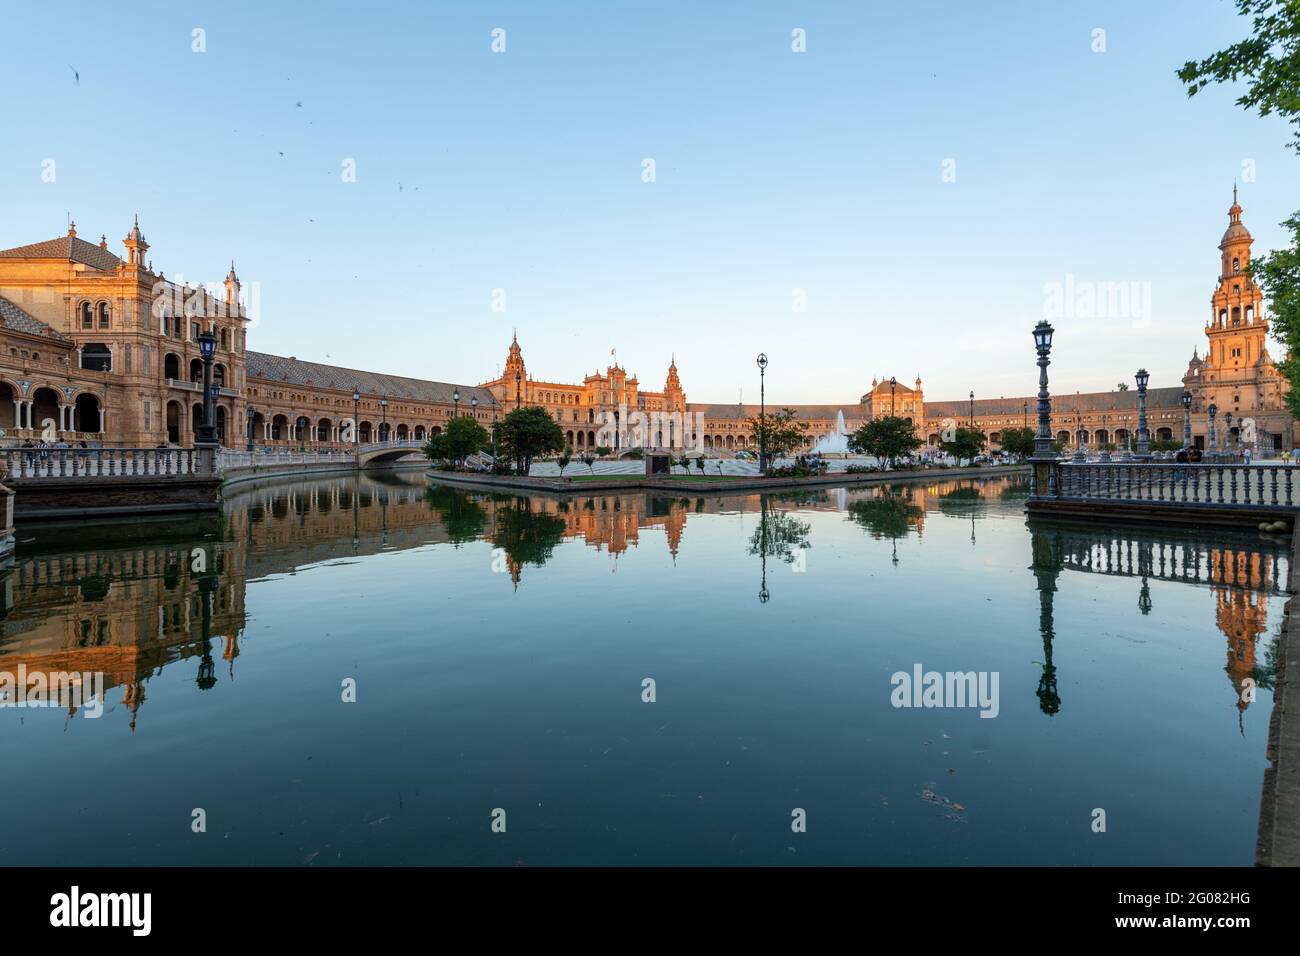 Plaza de España, Seville, Andalusia, Spain Stock Photo